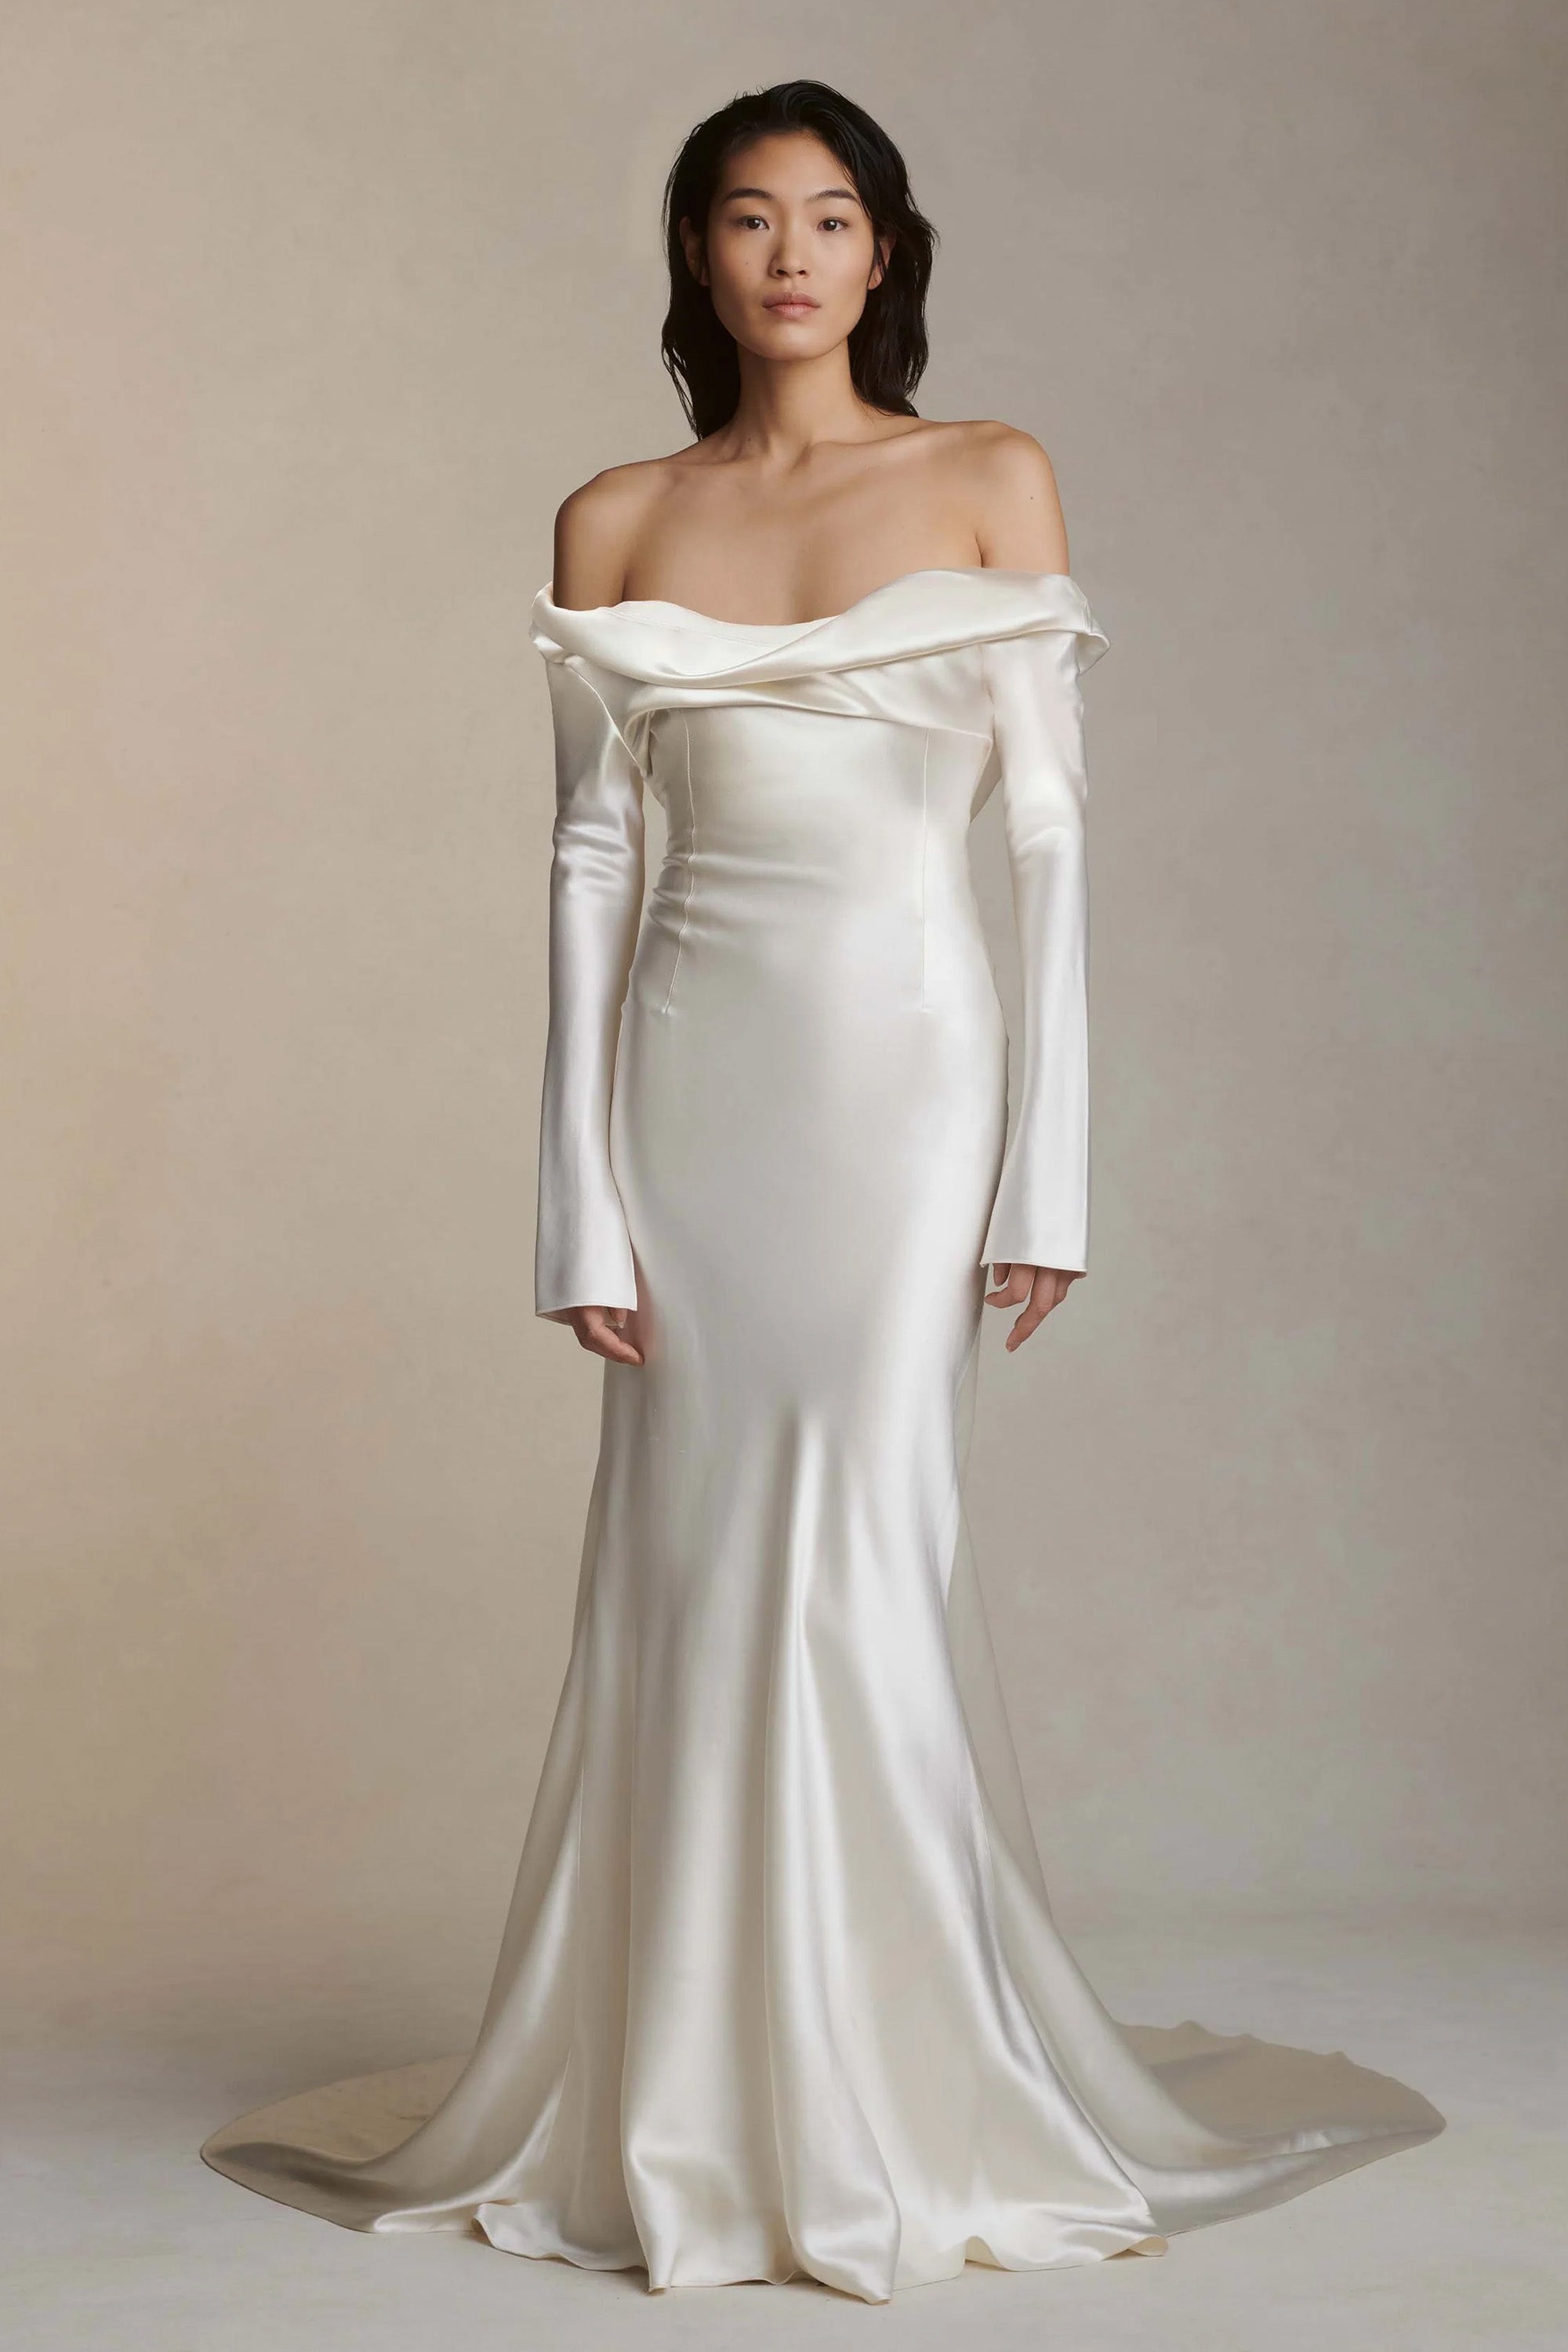 Grace | Crepe Fit & Flare Wedding Dress – Grace Loves Lace US